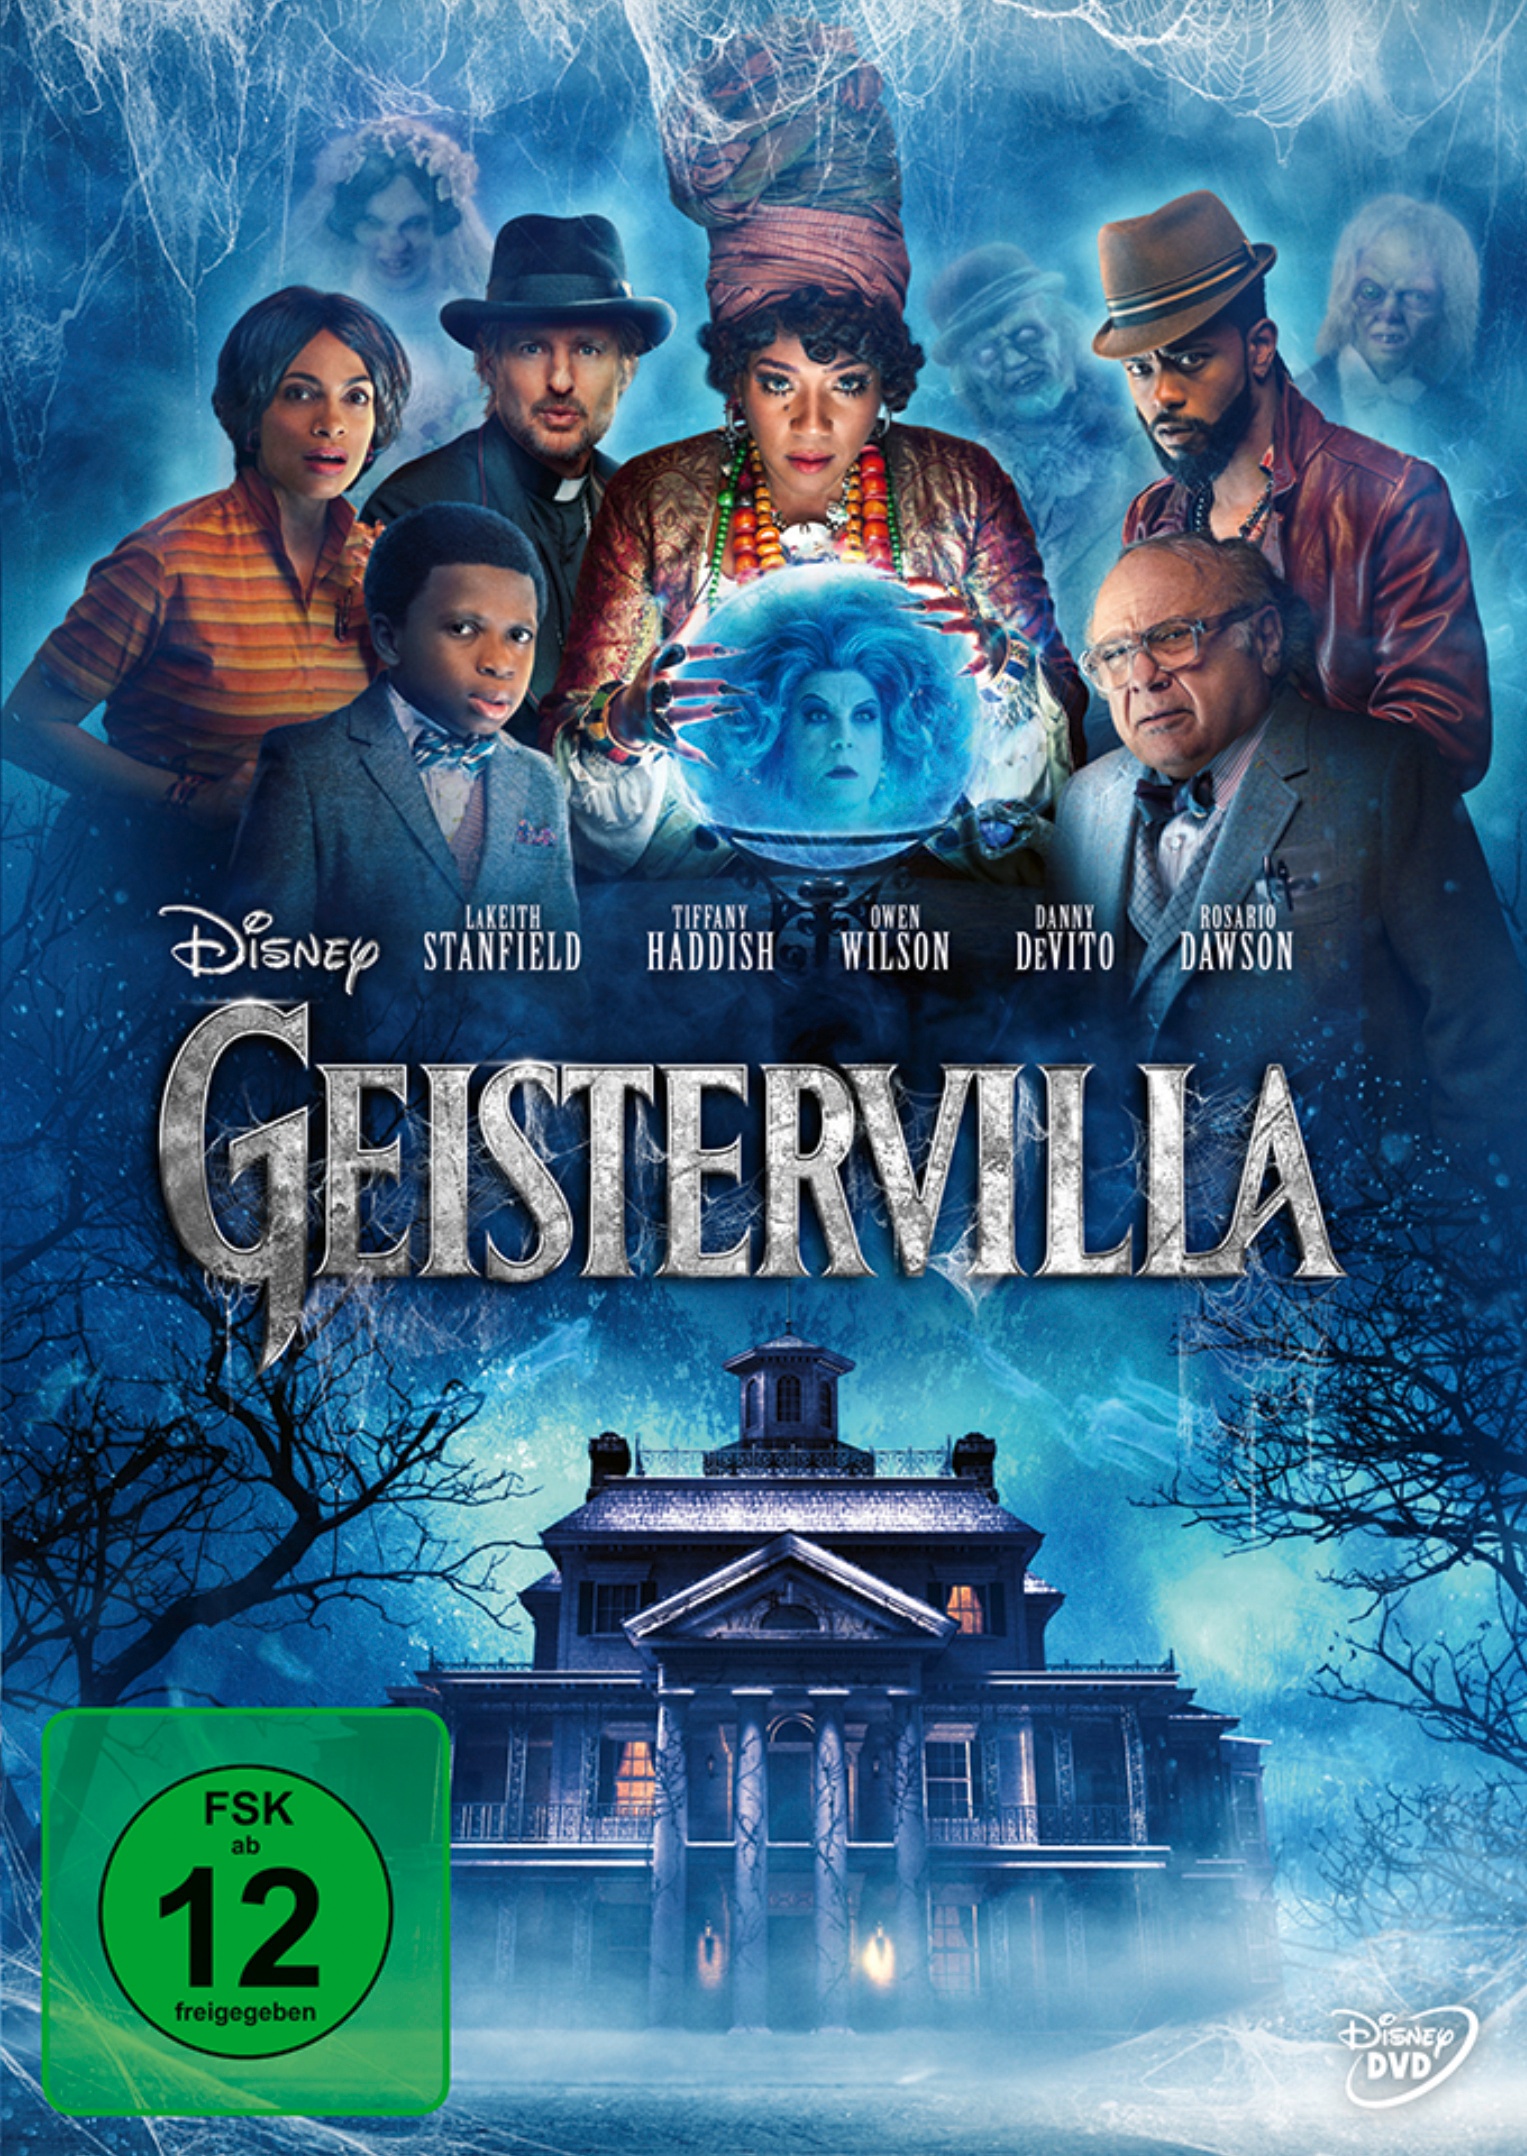 Geistervilla (DVD)